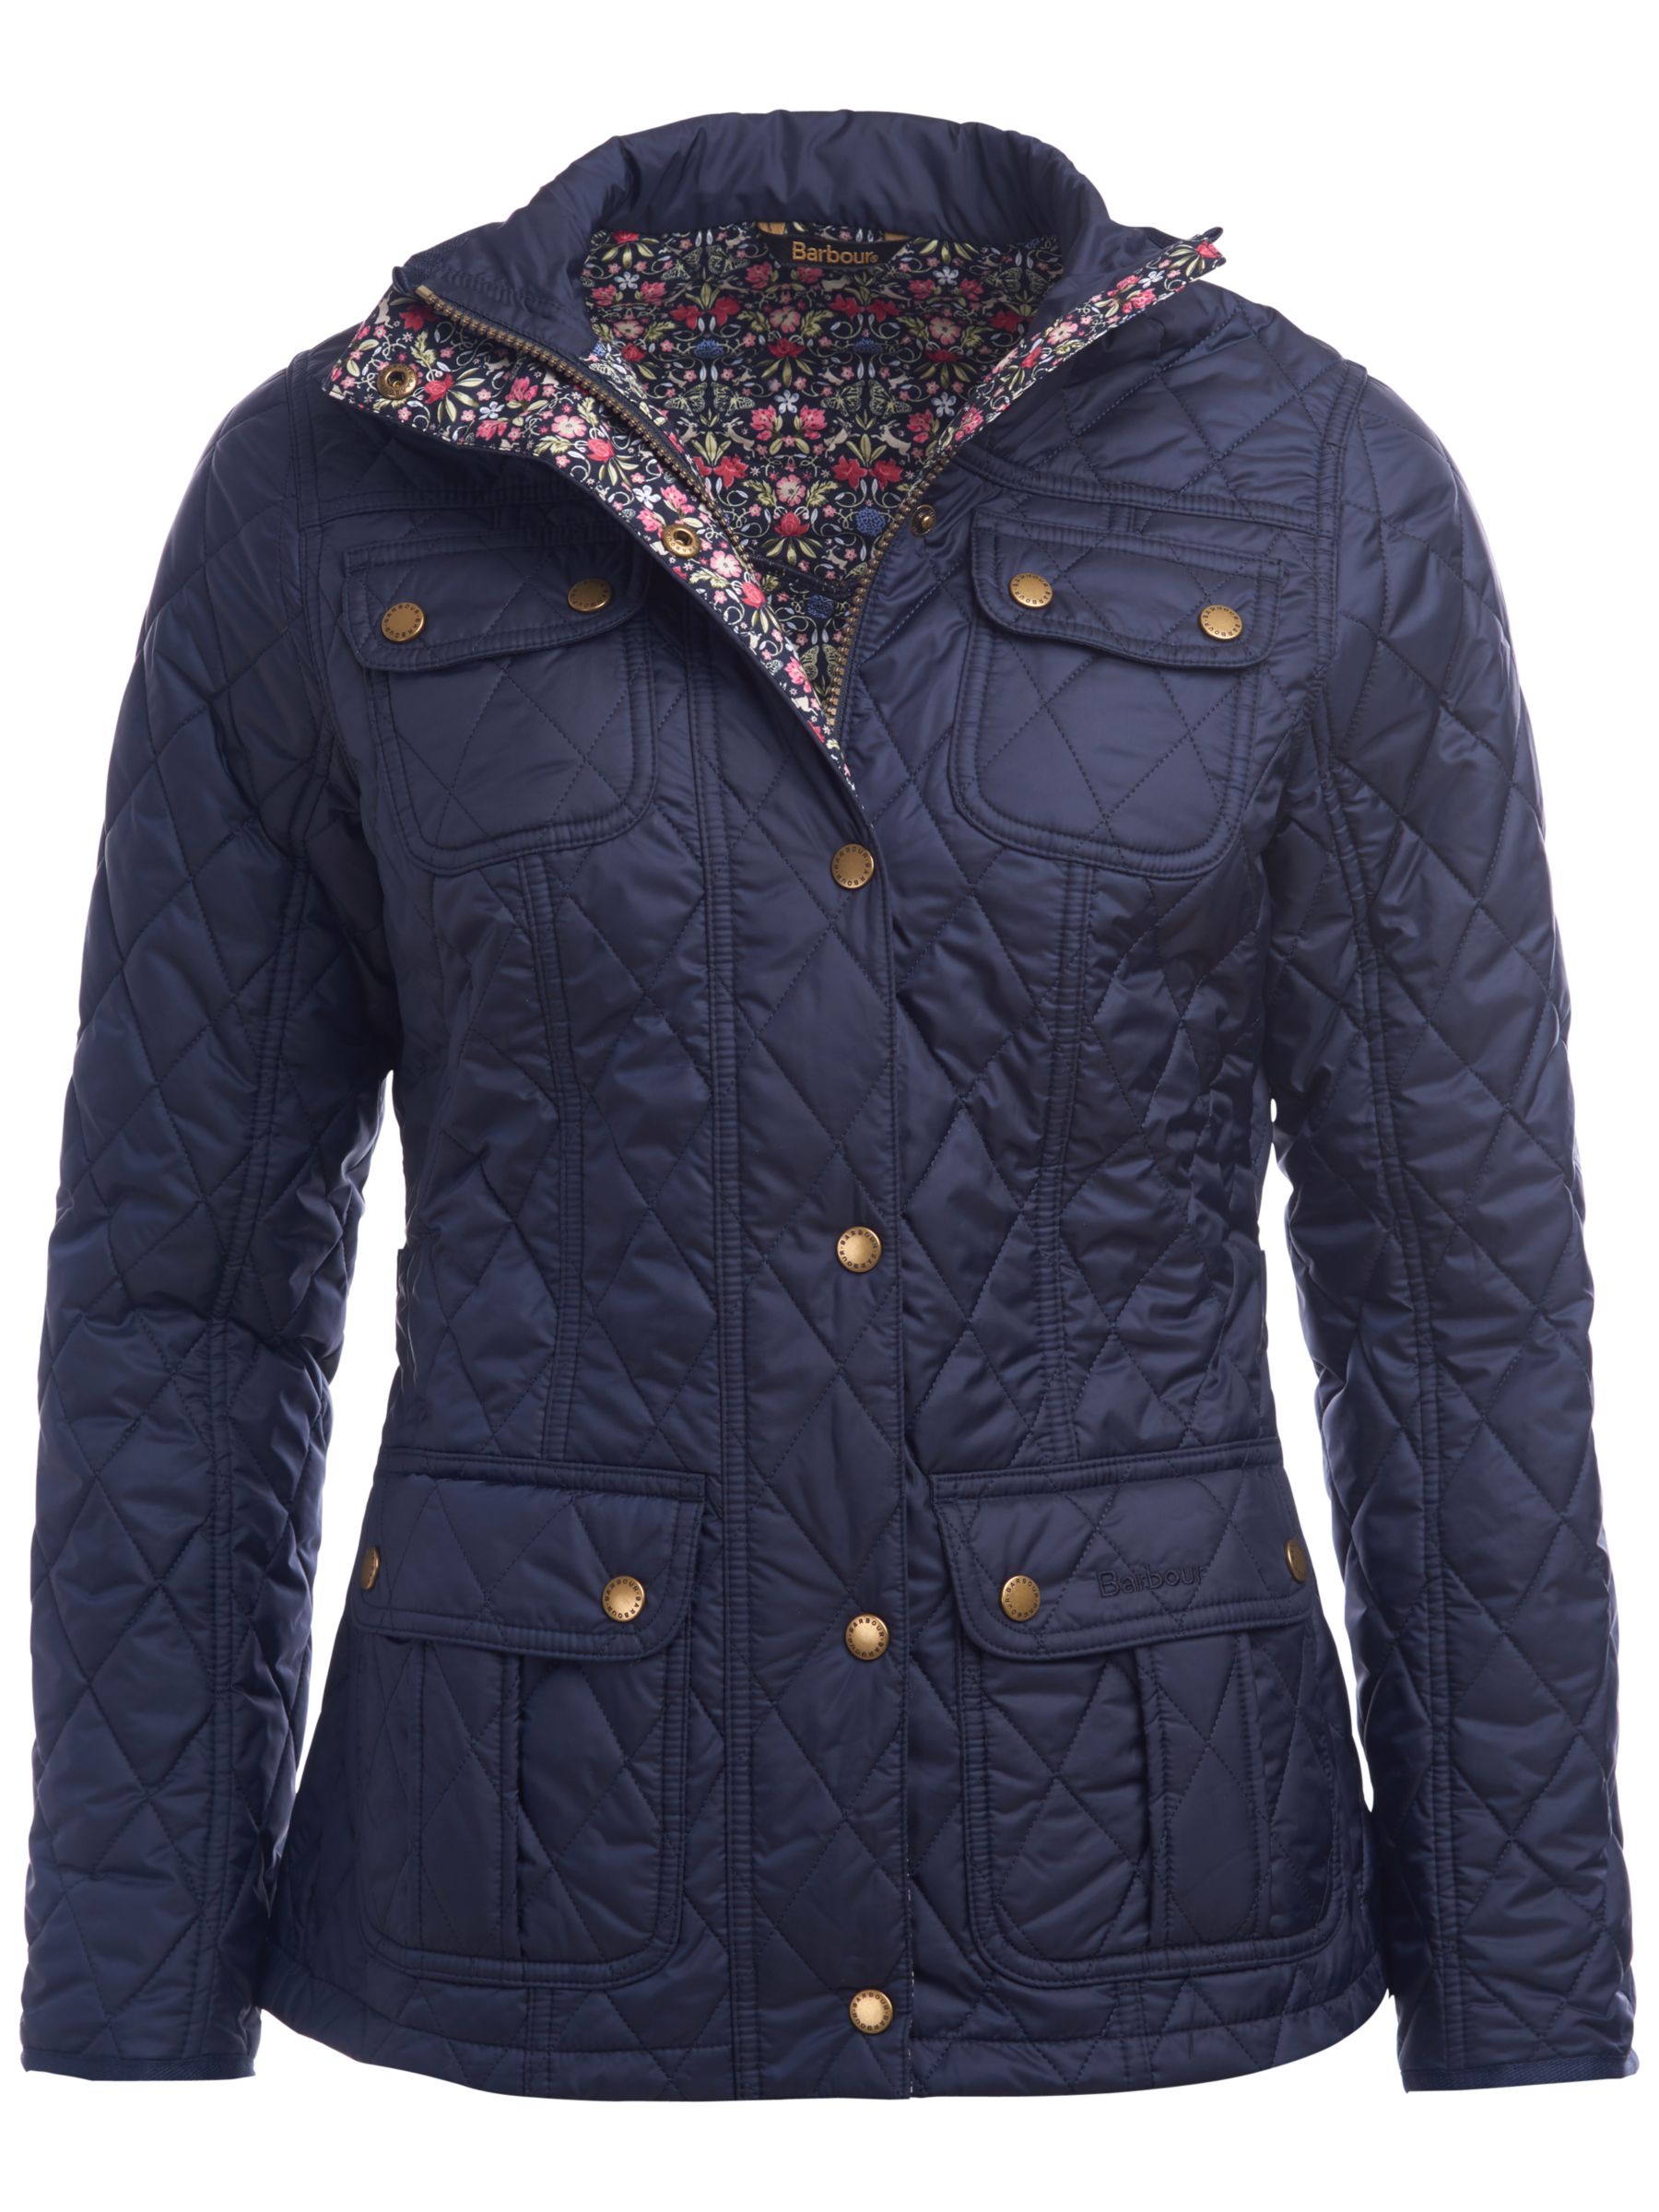 Barbour | Women's Coats & Jackets | John Lewis